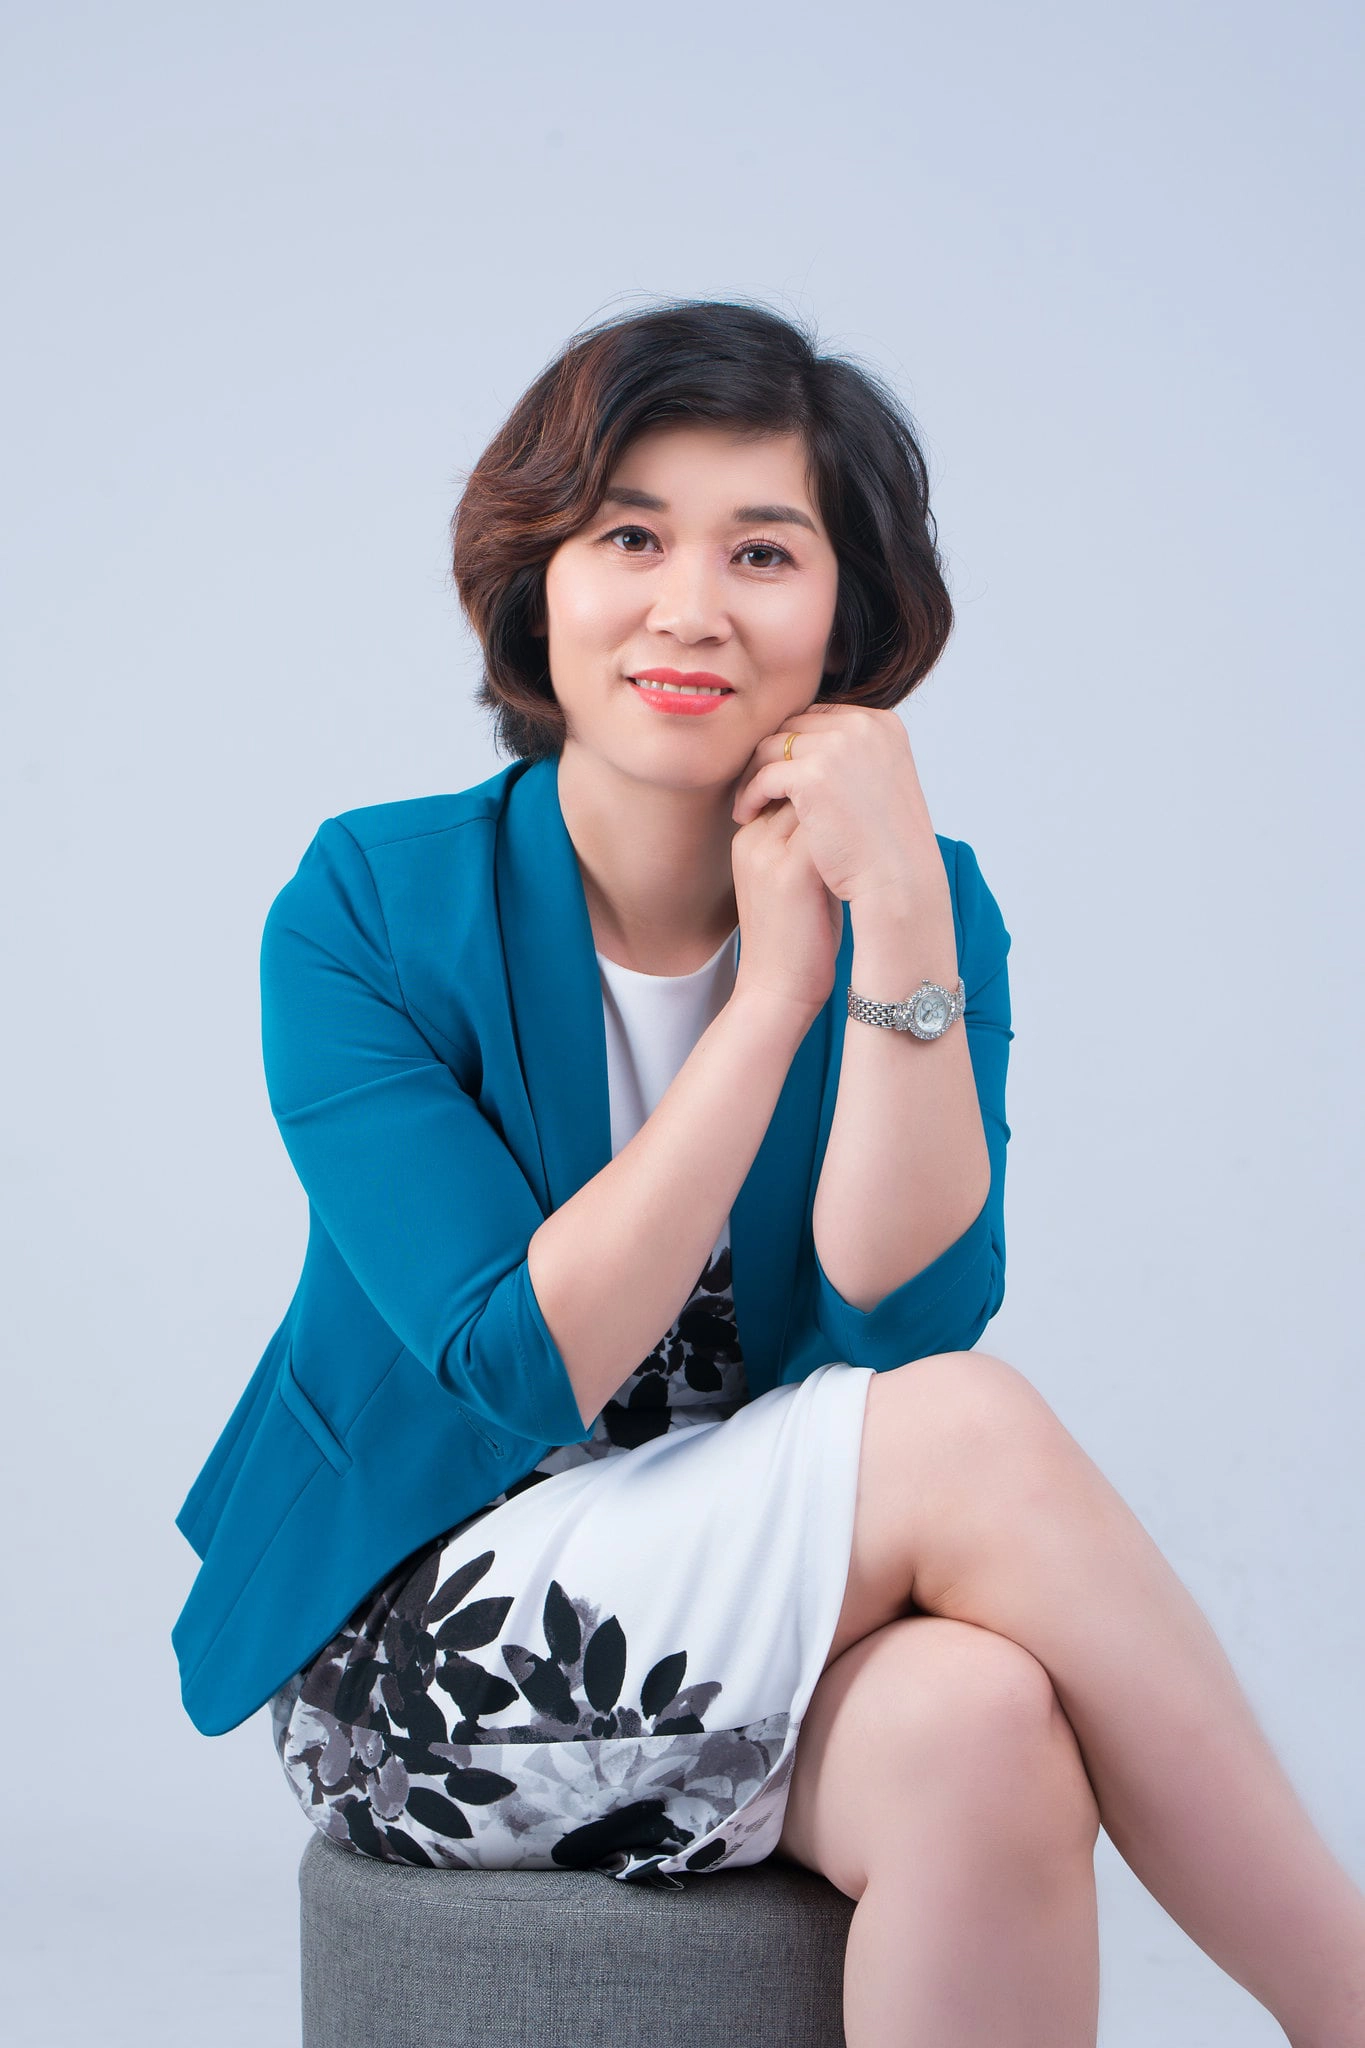 anh doanh nhan 2 min - 49 cách tạo dáng chụp ảnh profile đẹp, chuyên nghiệp nhất- HThao Studio